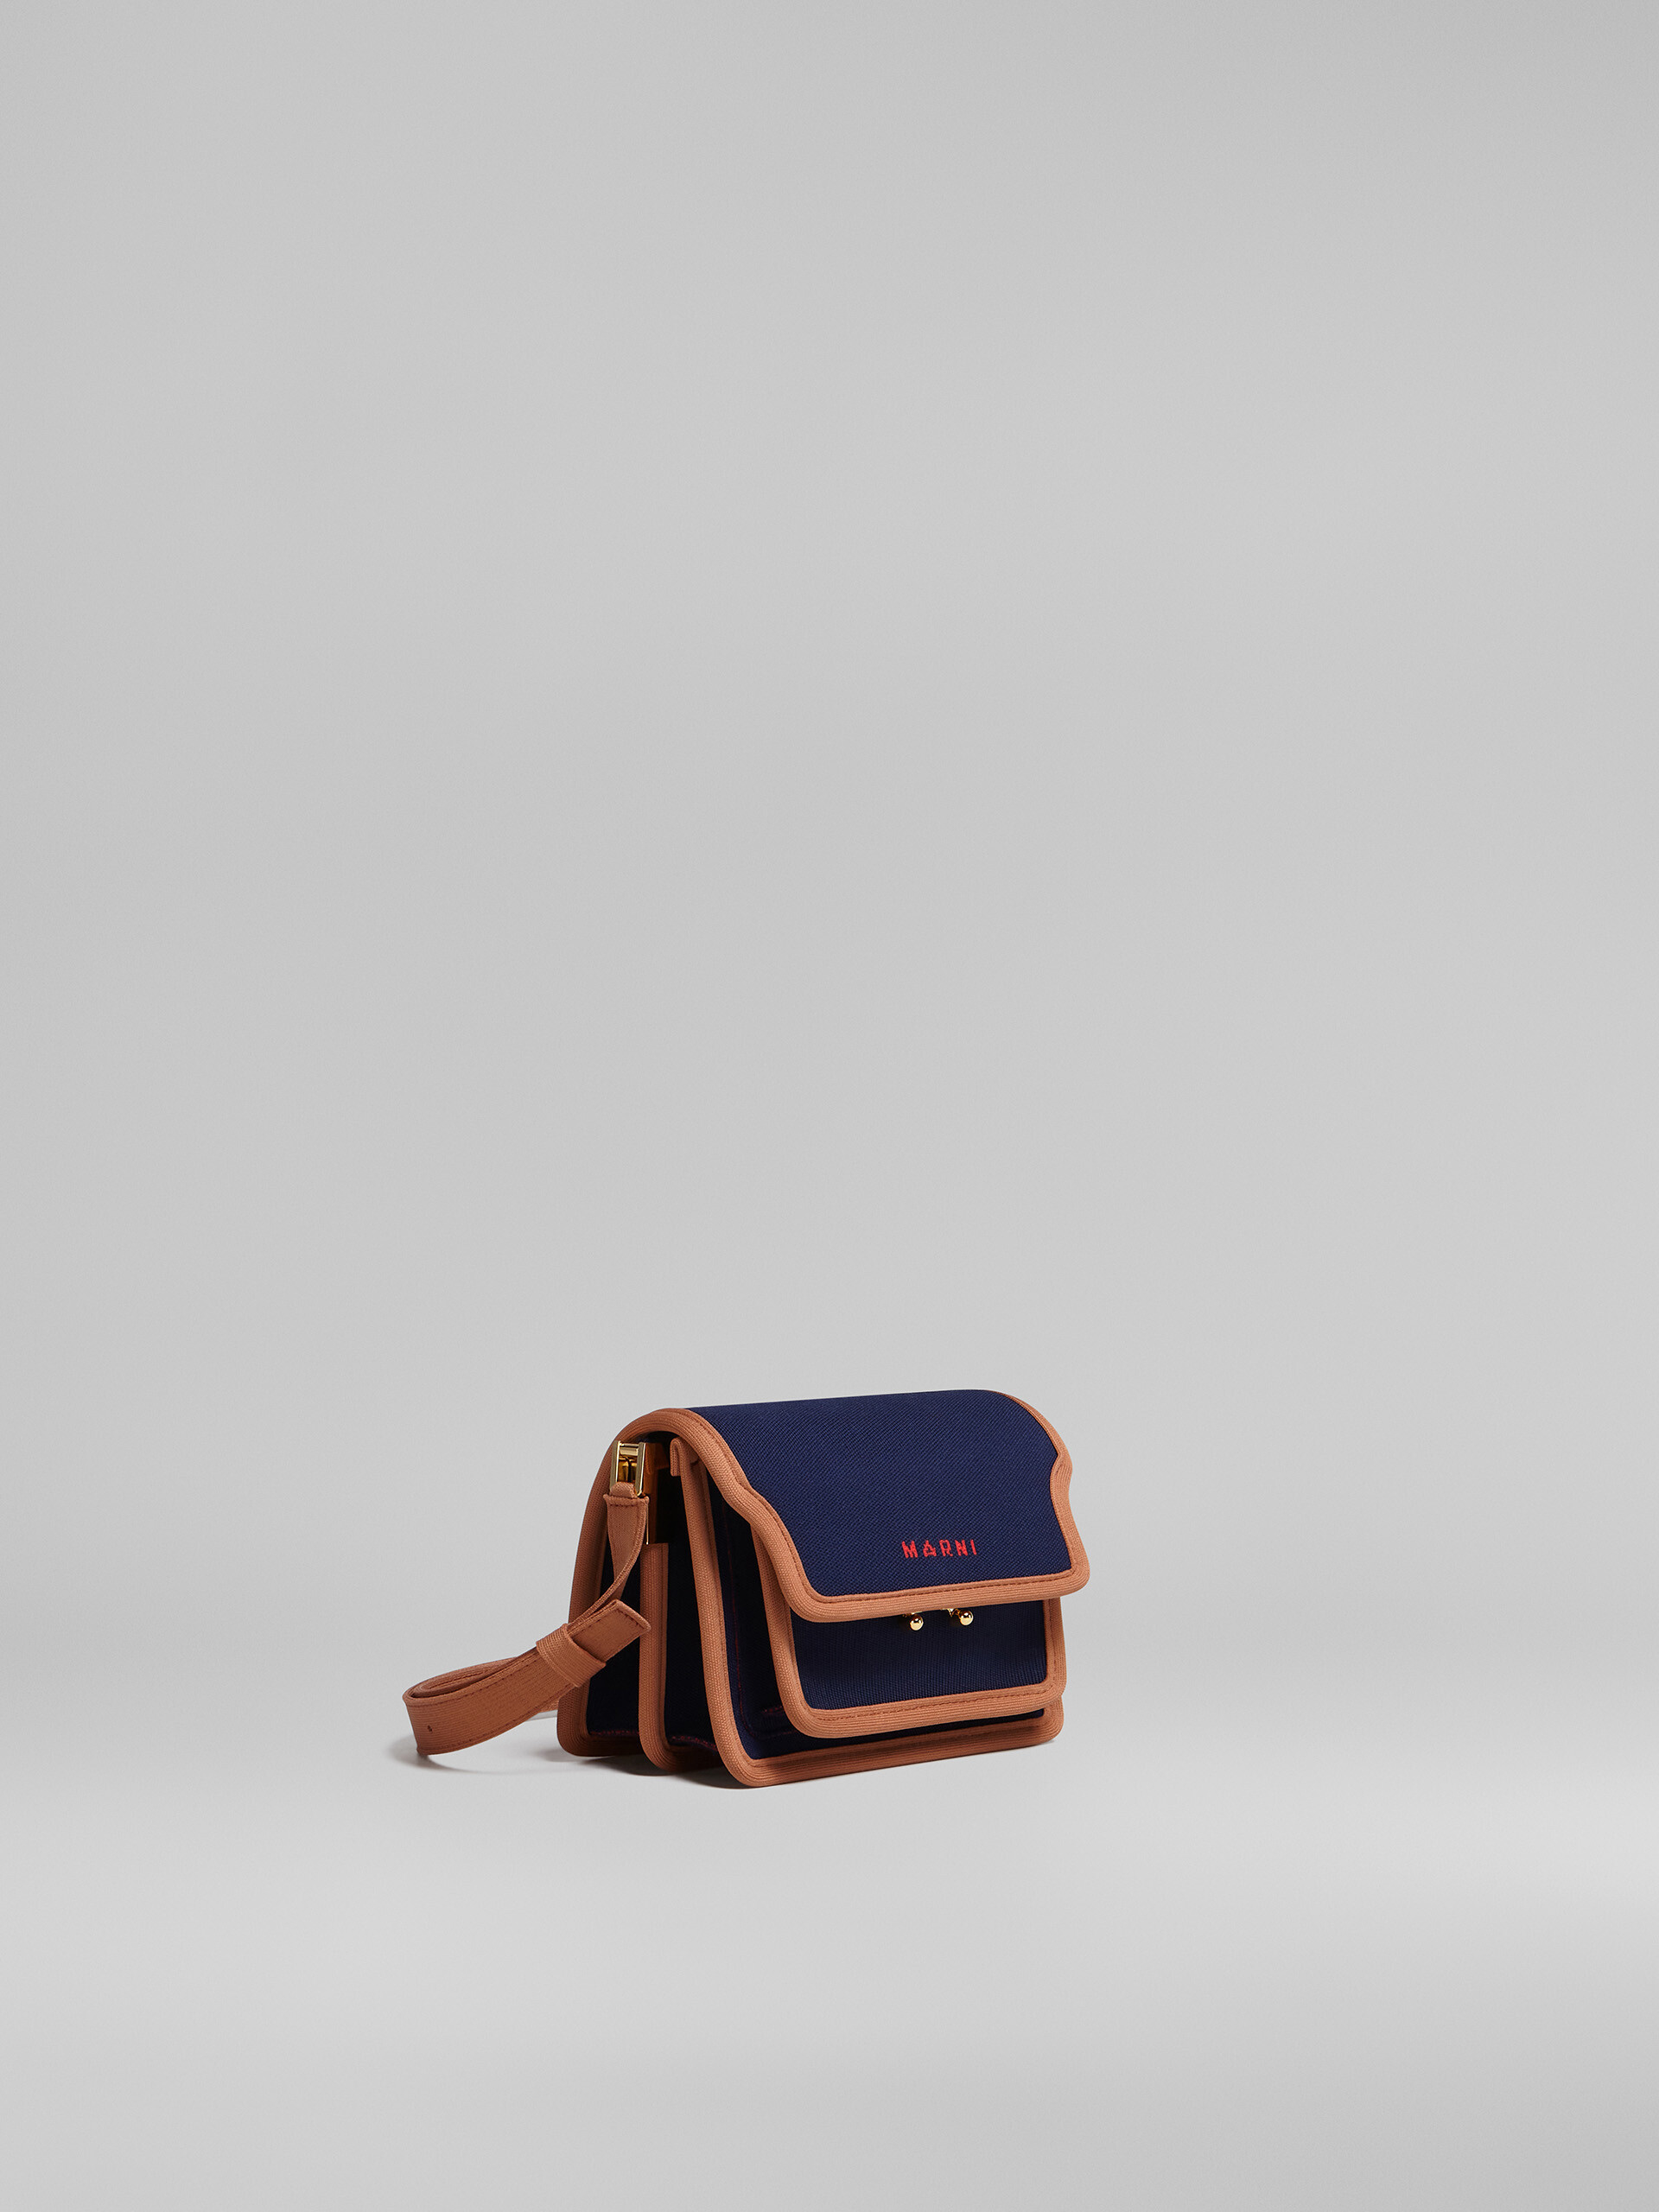 TRUNK SOFT mini bag in blue and brown jacquard - Shoulder Bag - Image 6